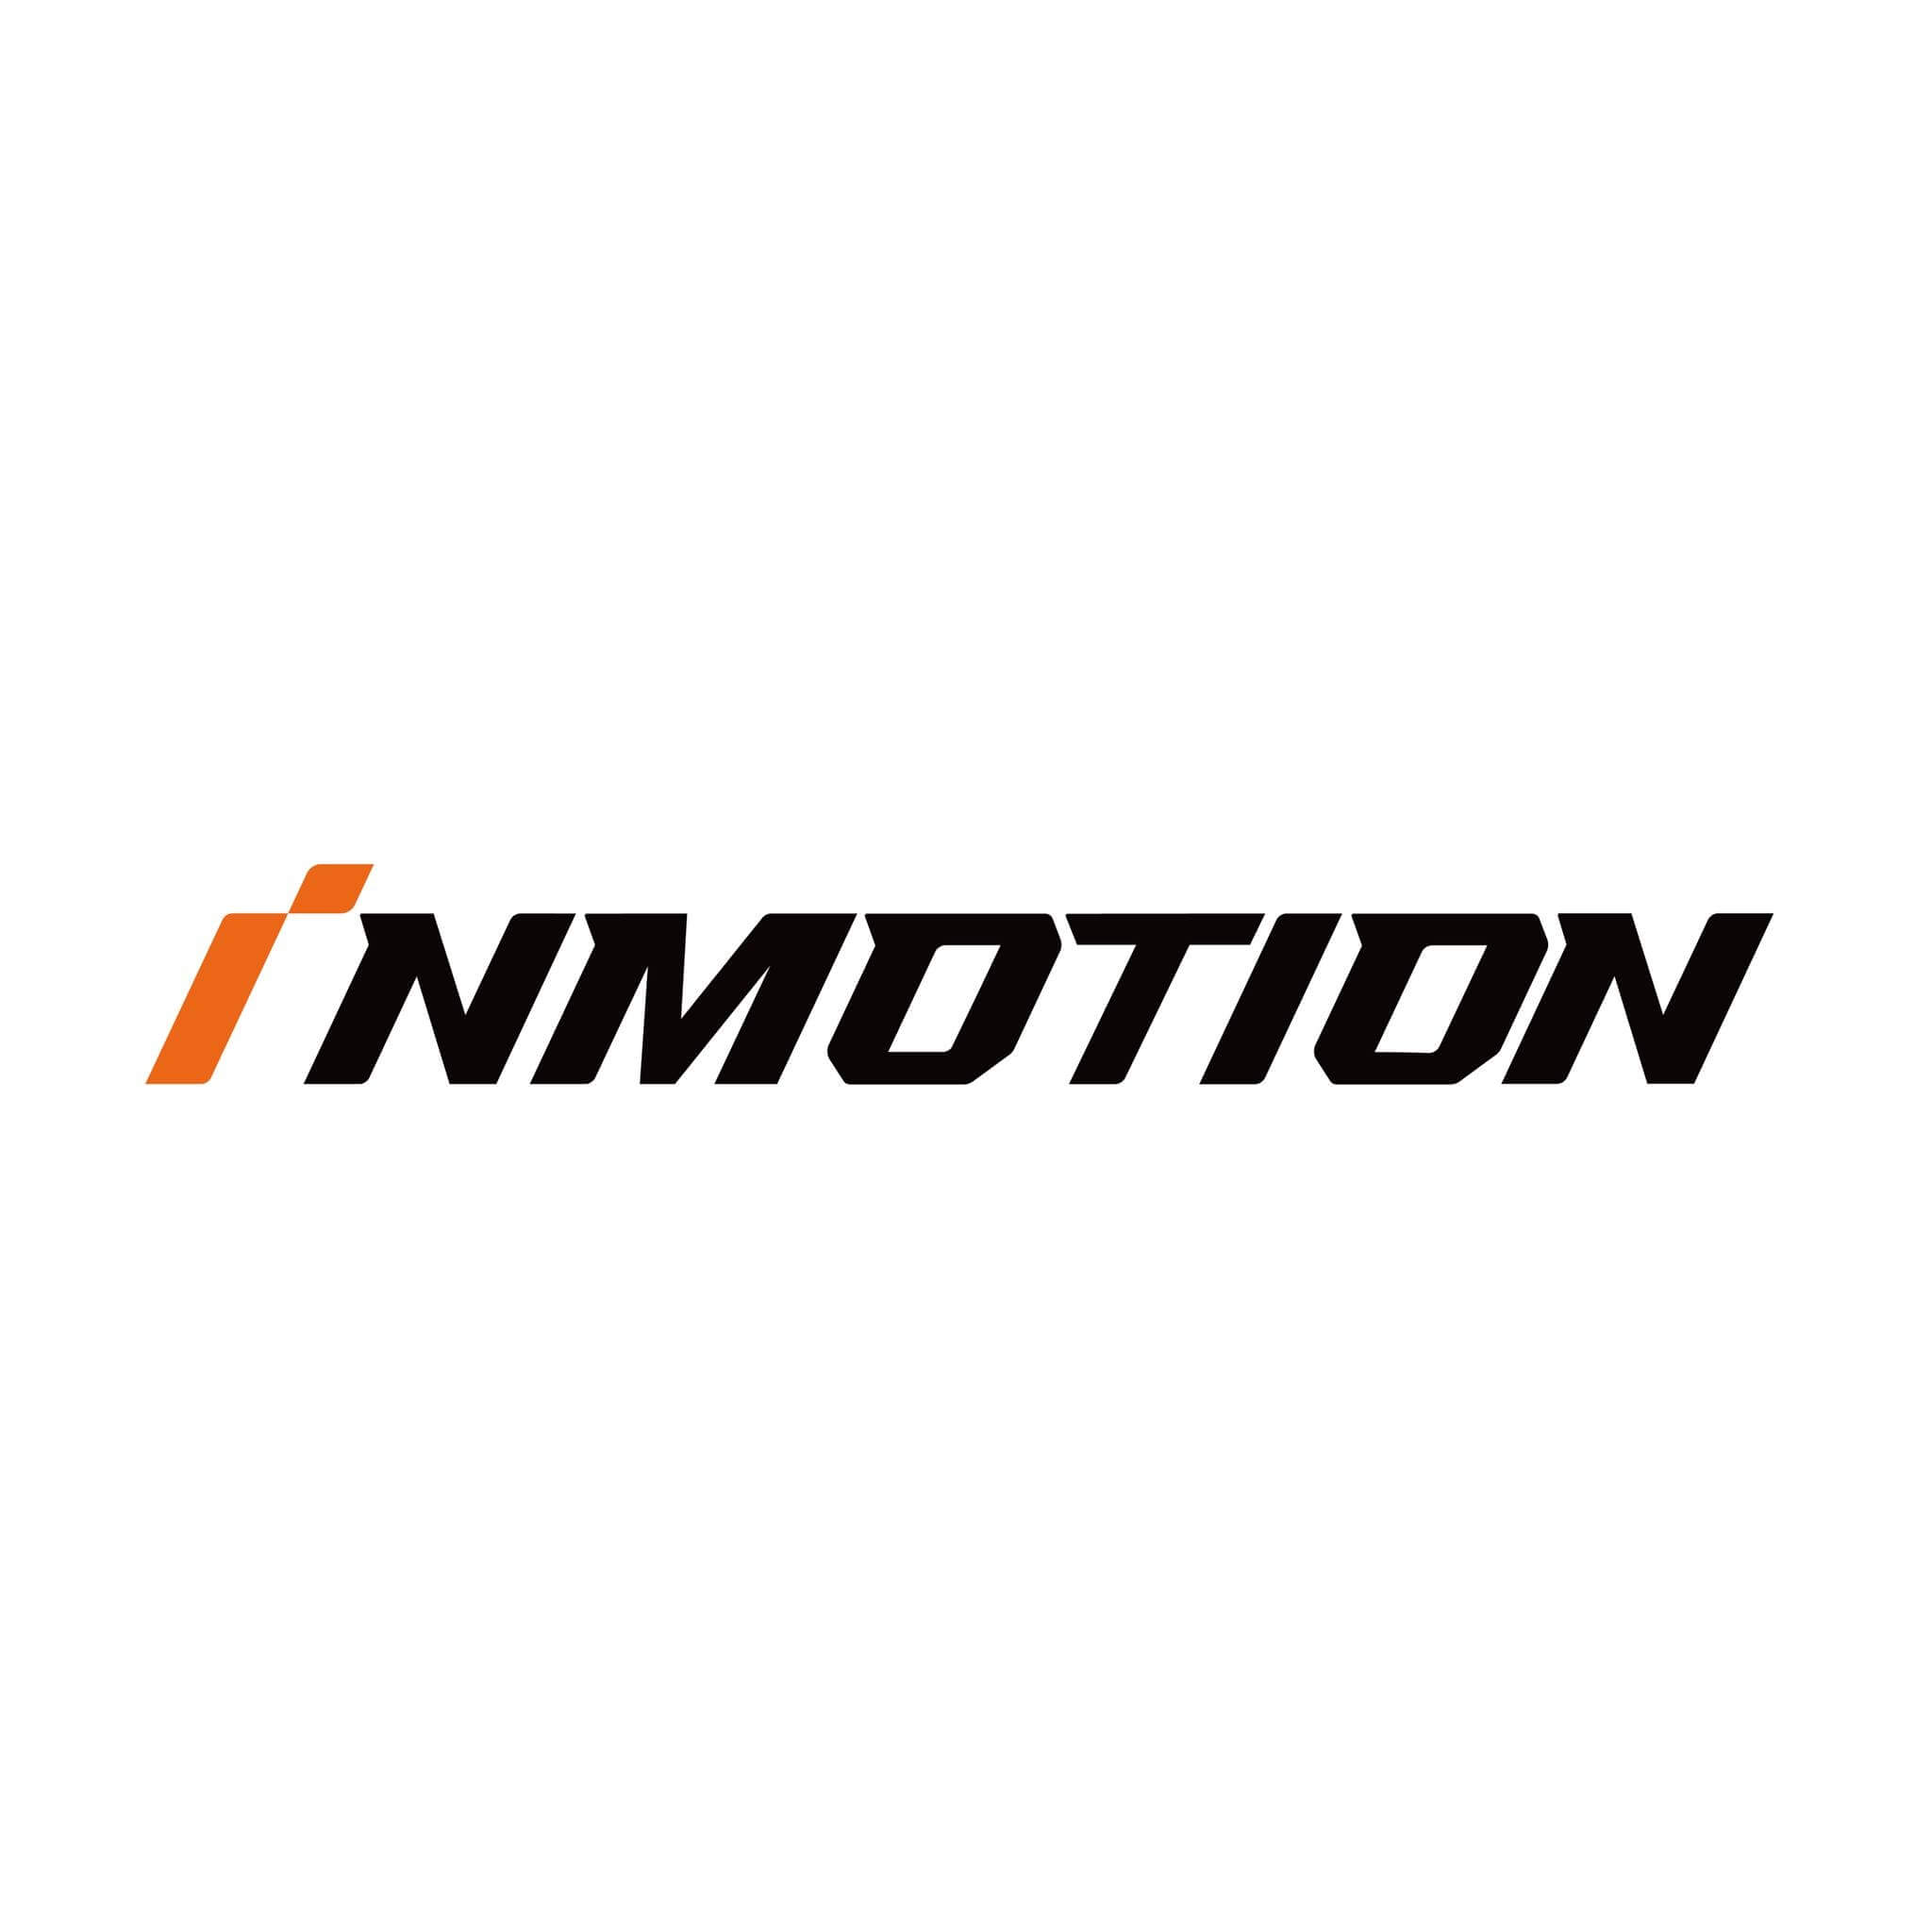 InMotion Logo